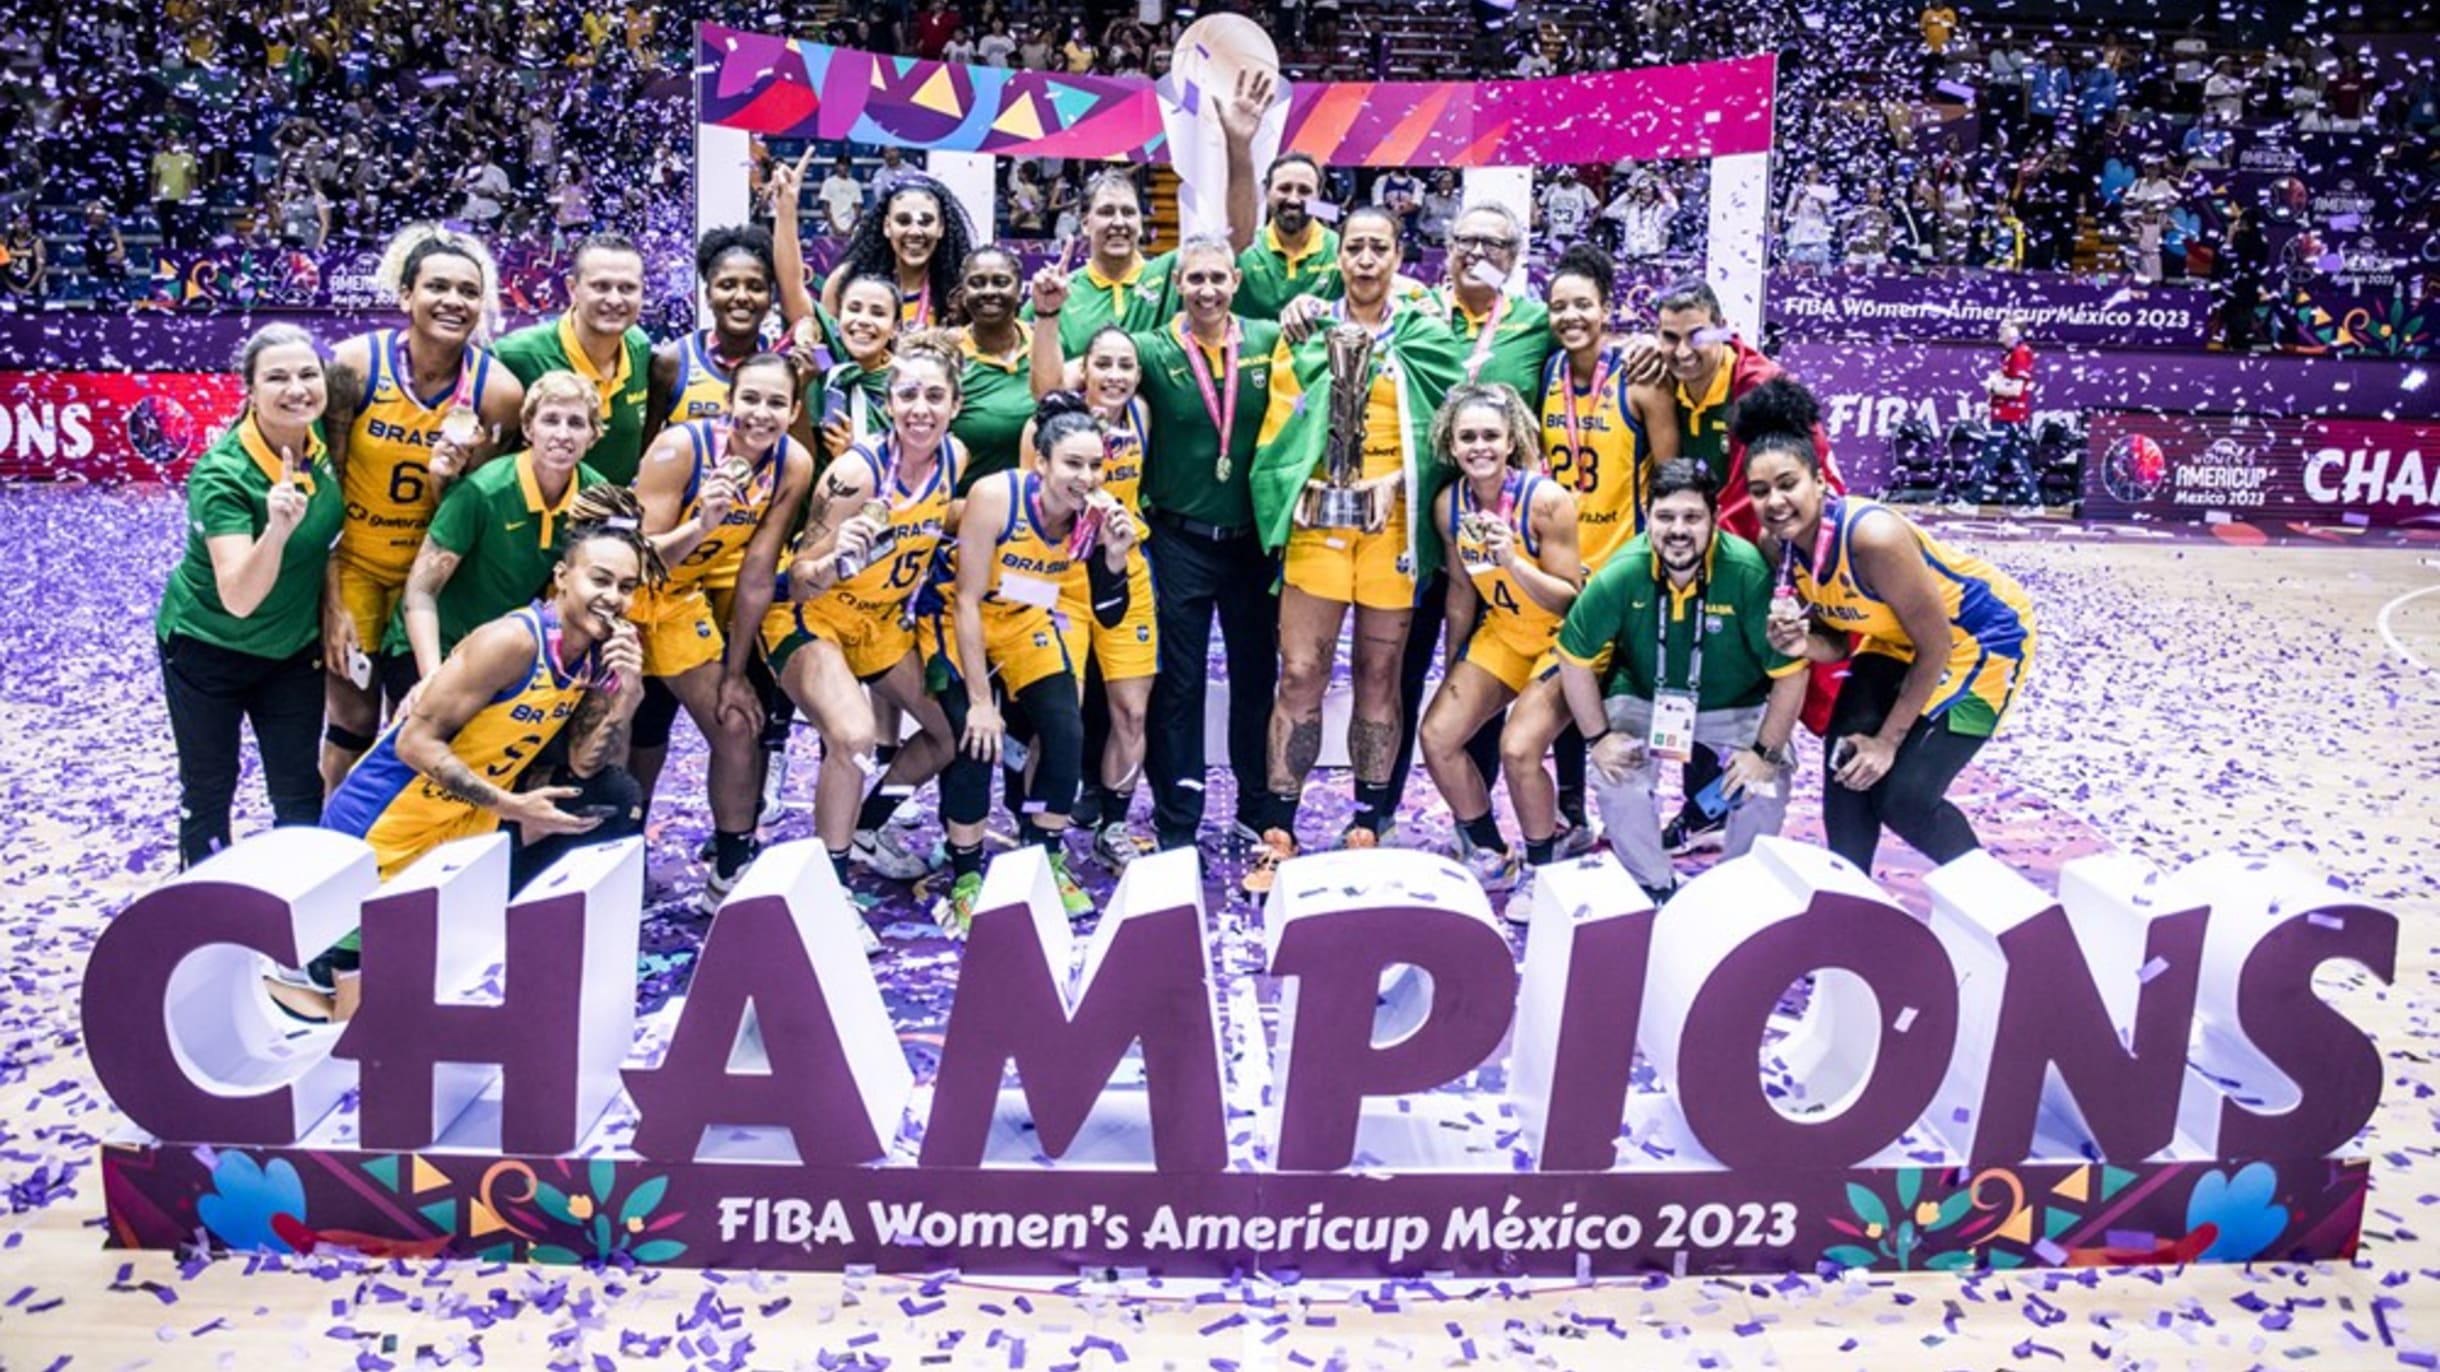 Seleção feminina de basquetebol de 3x3 na fase final da Europe Cup